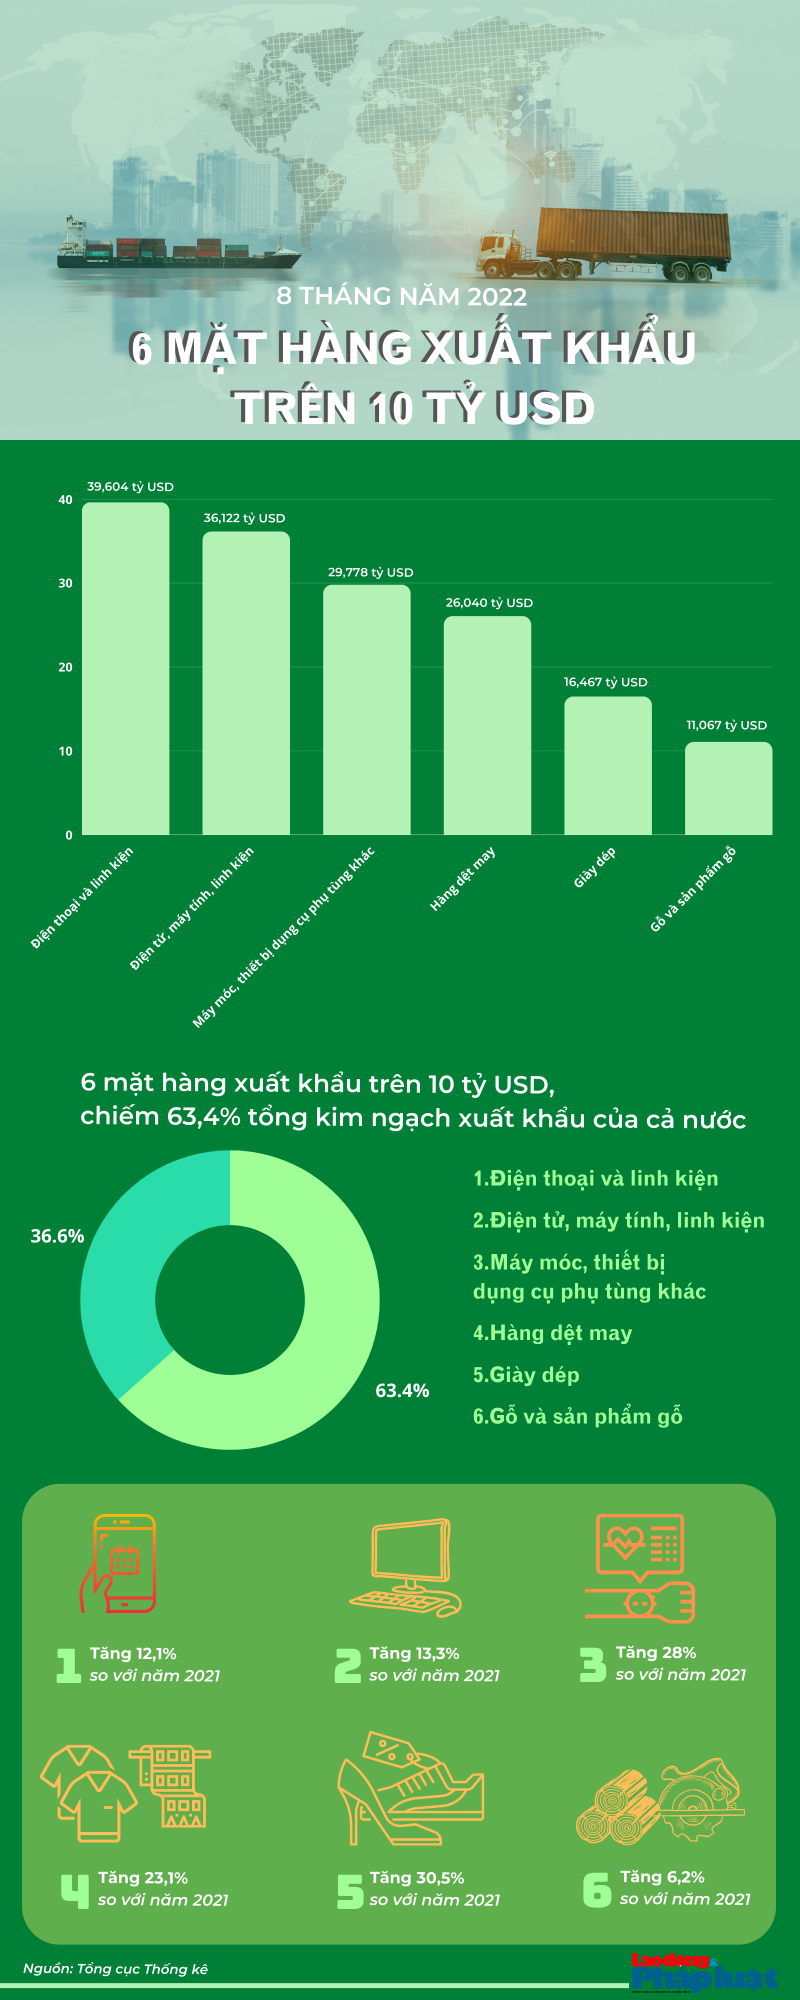 Infographic: 6 mặt hàng xuất khẩu trên 10 tỷ USD